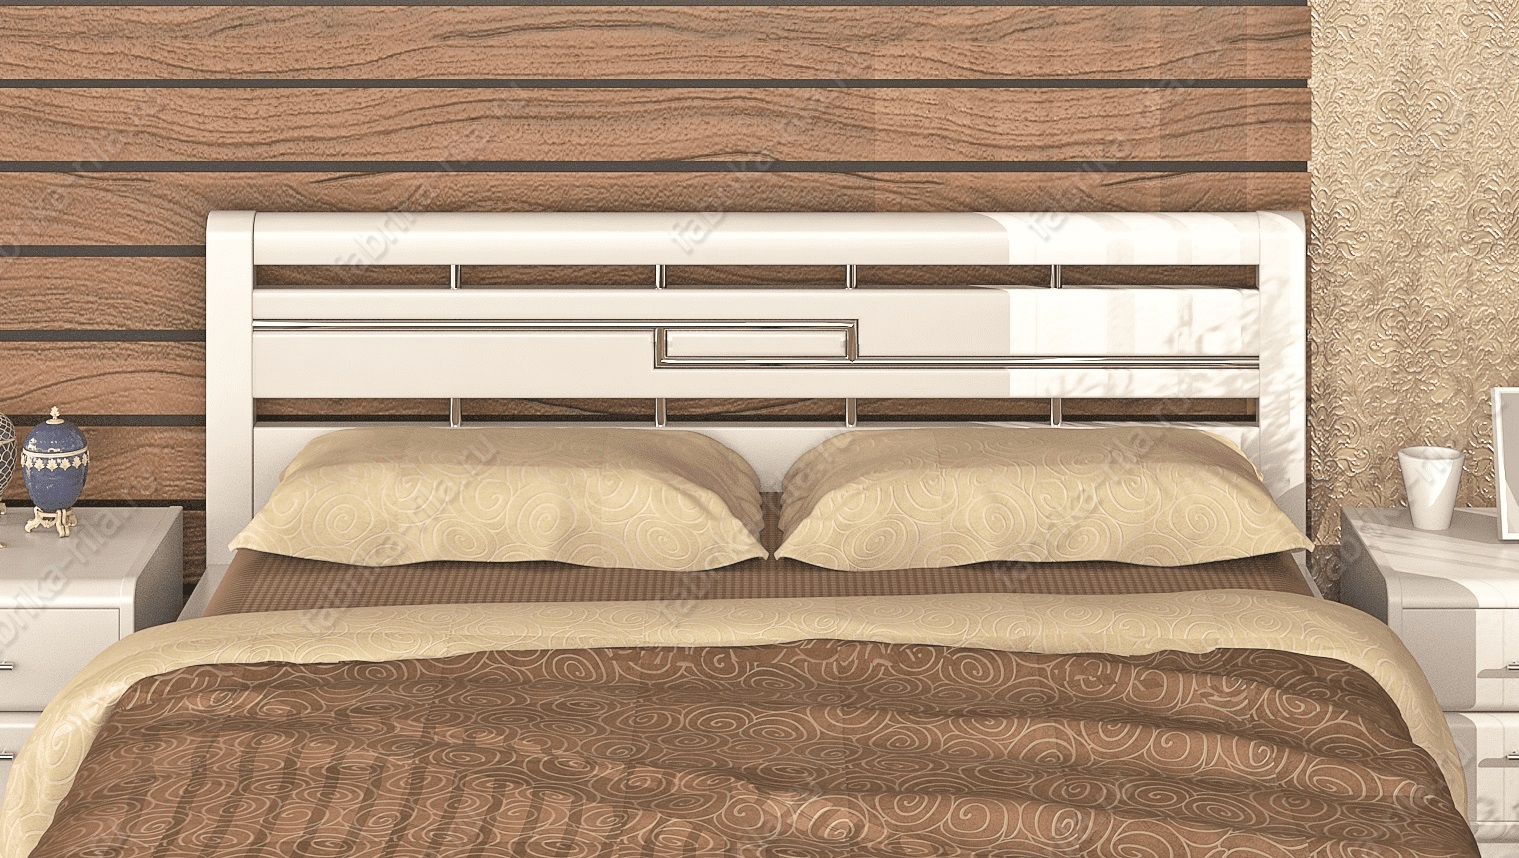 Кровать Okaeri 4 — 120x200 см. из сосны